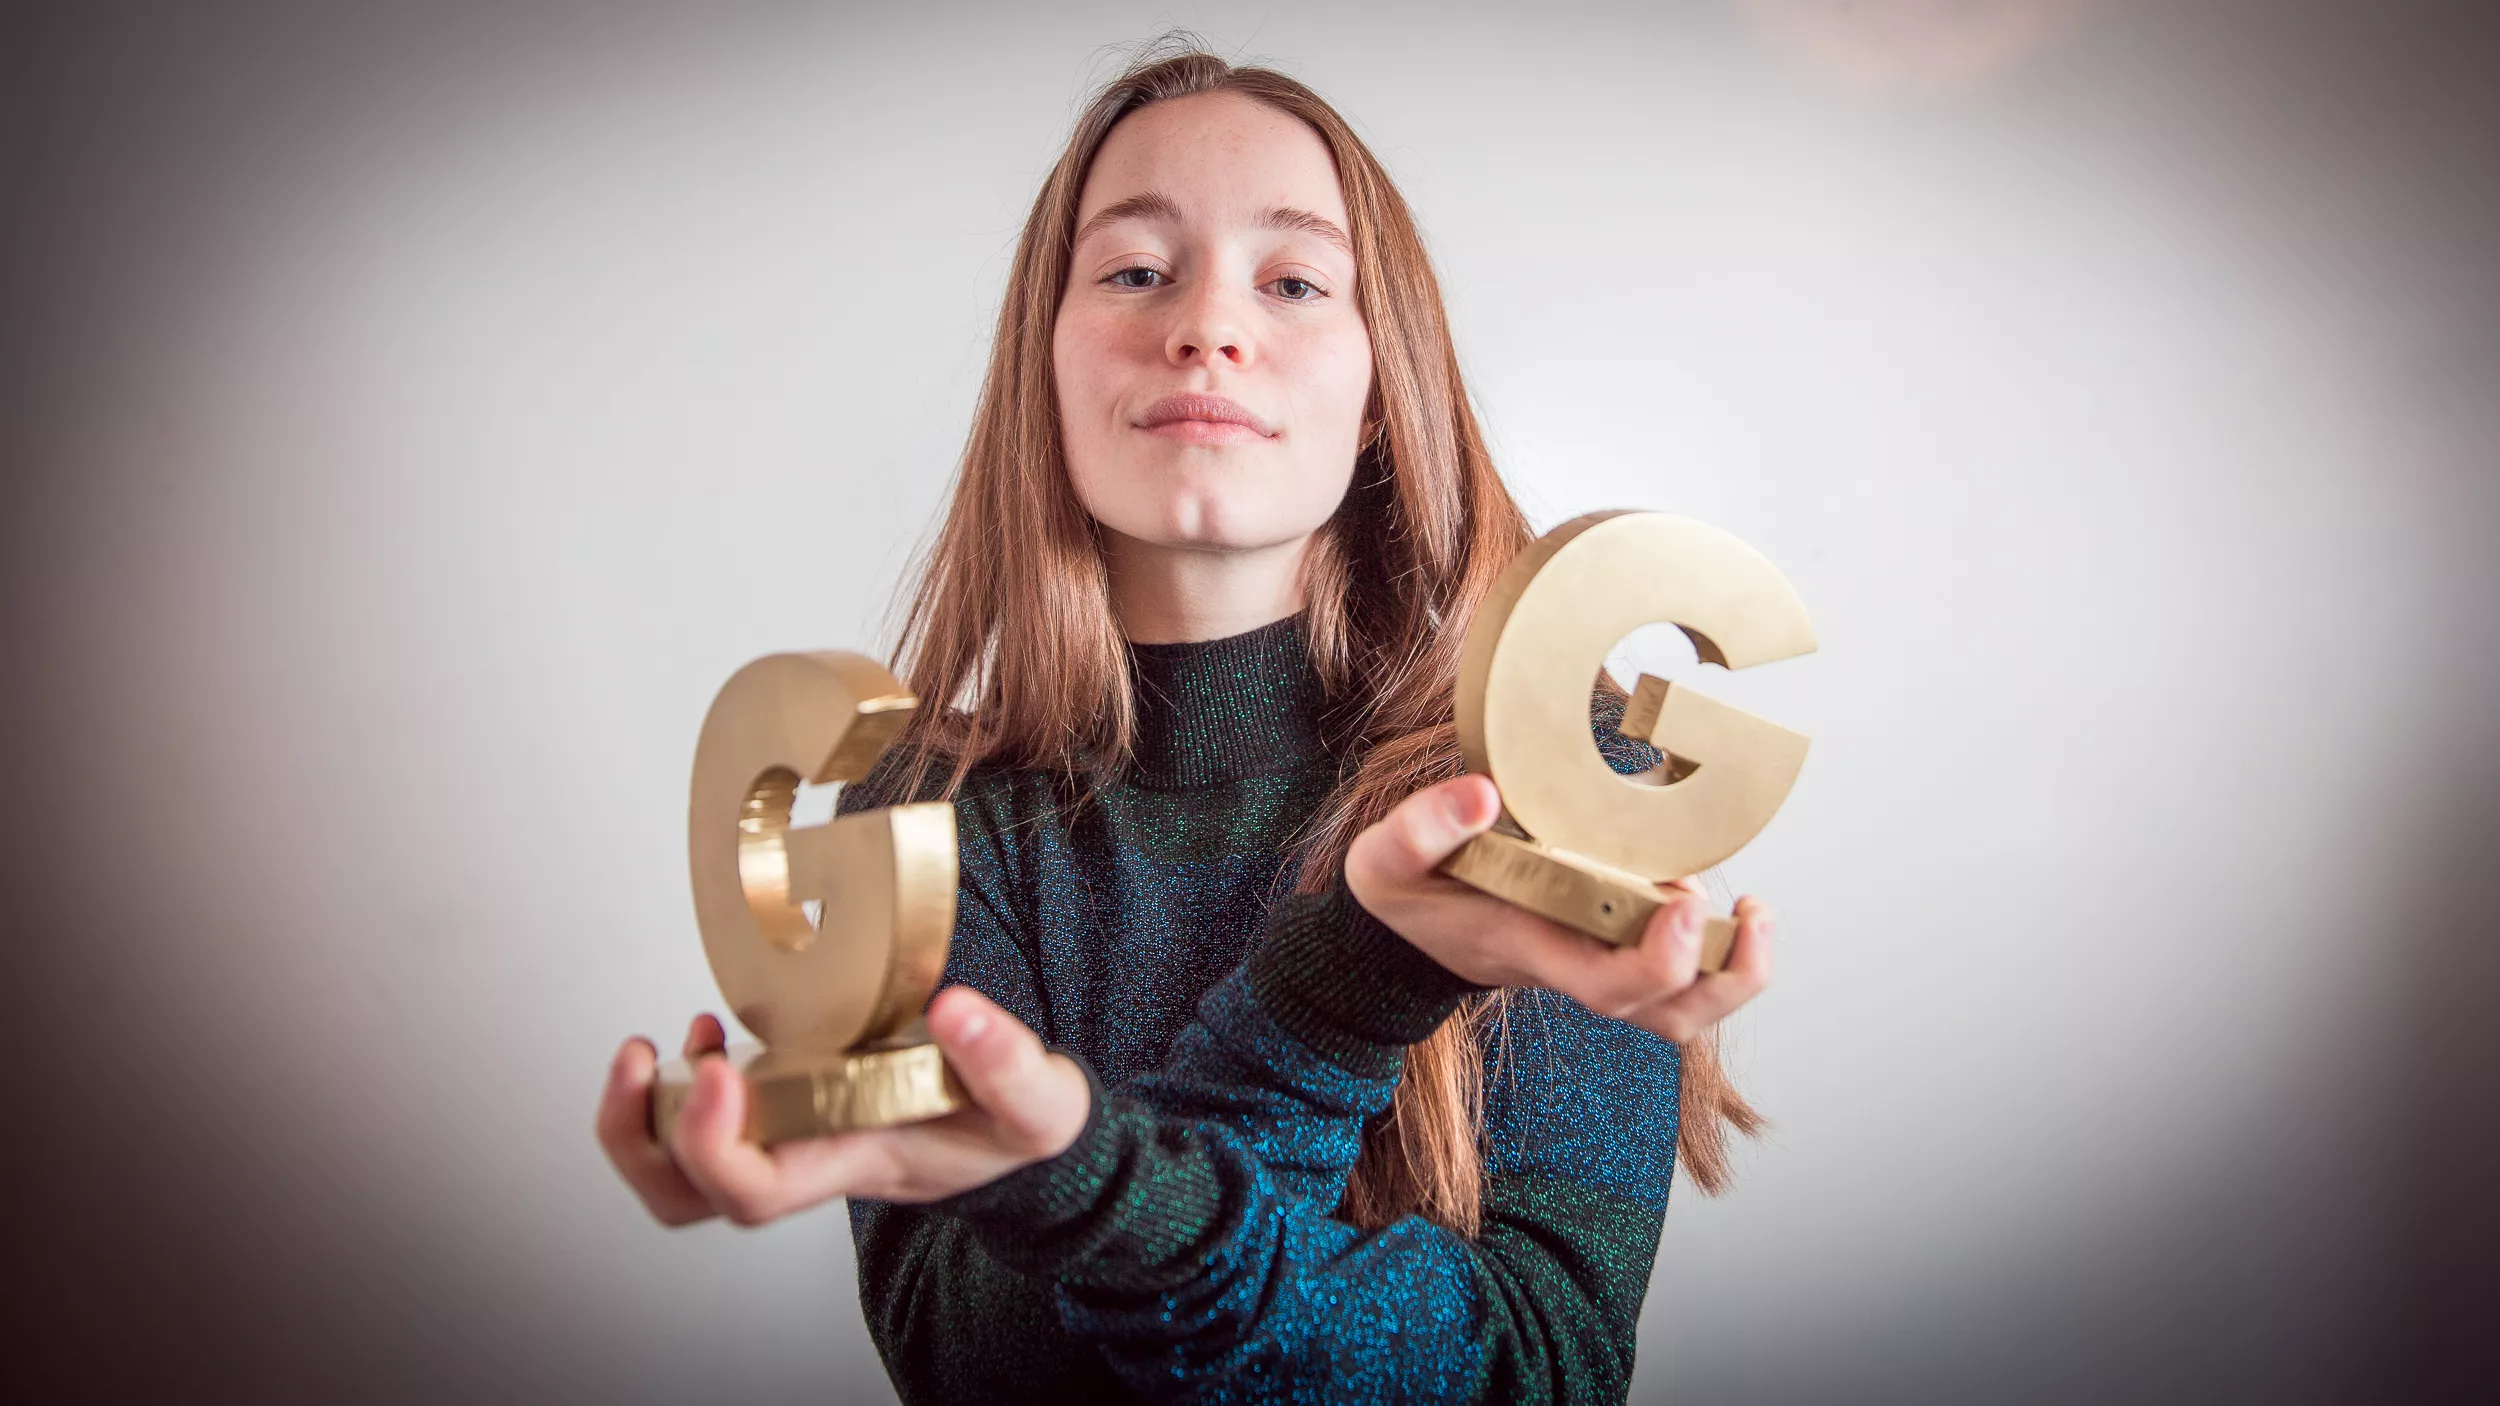 GAFFA-Prisen 2017: Sigrid til topps igjen